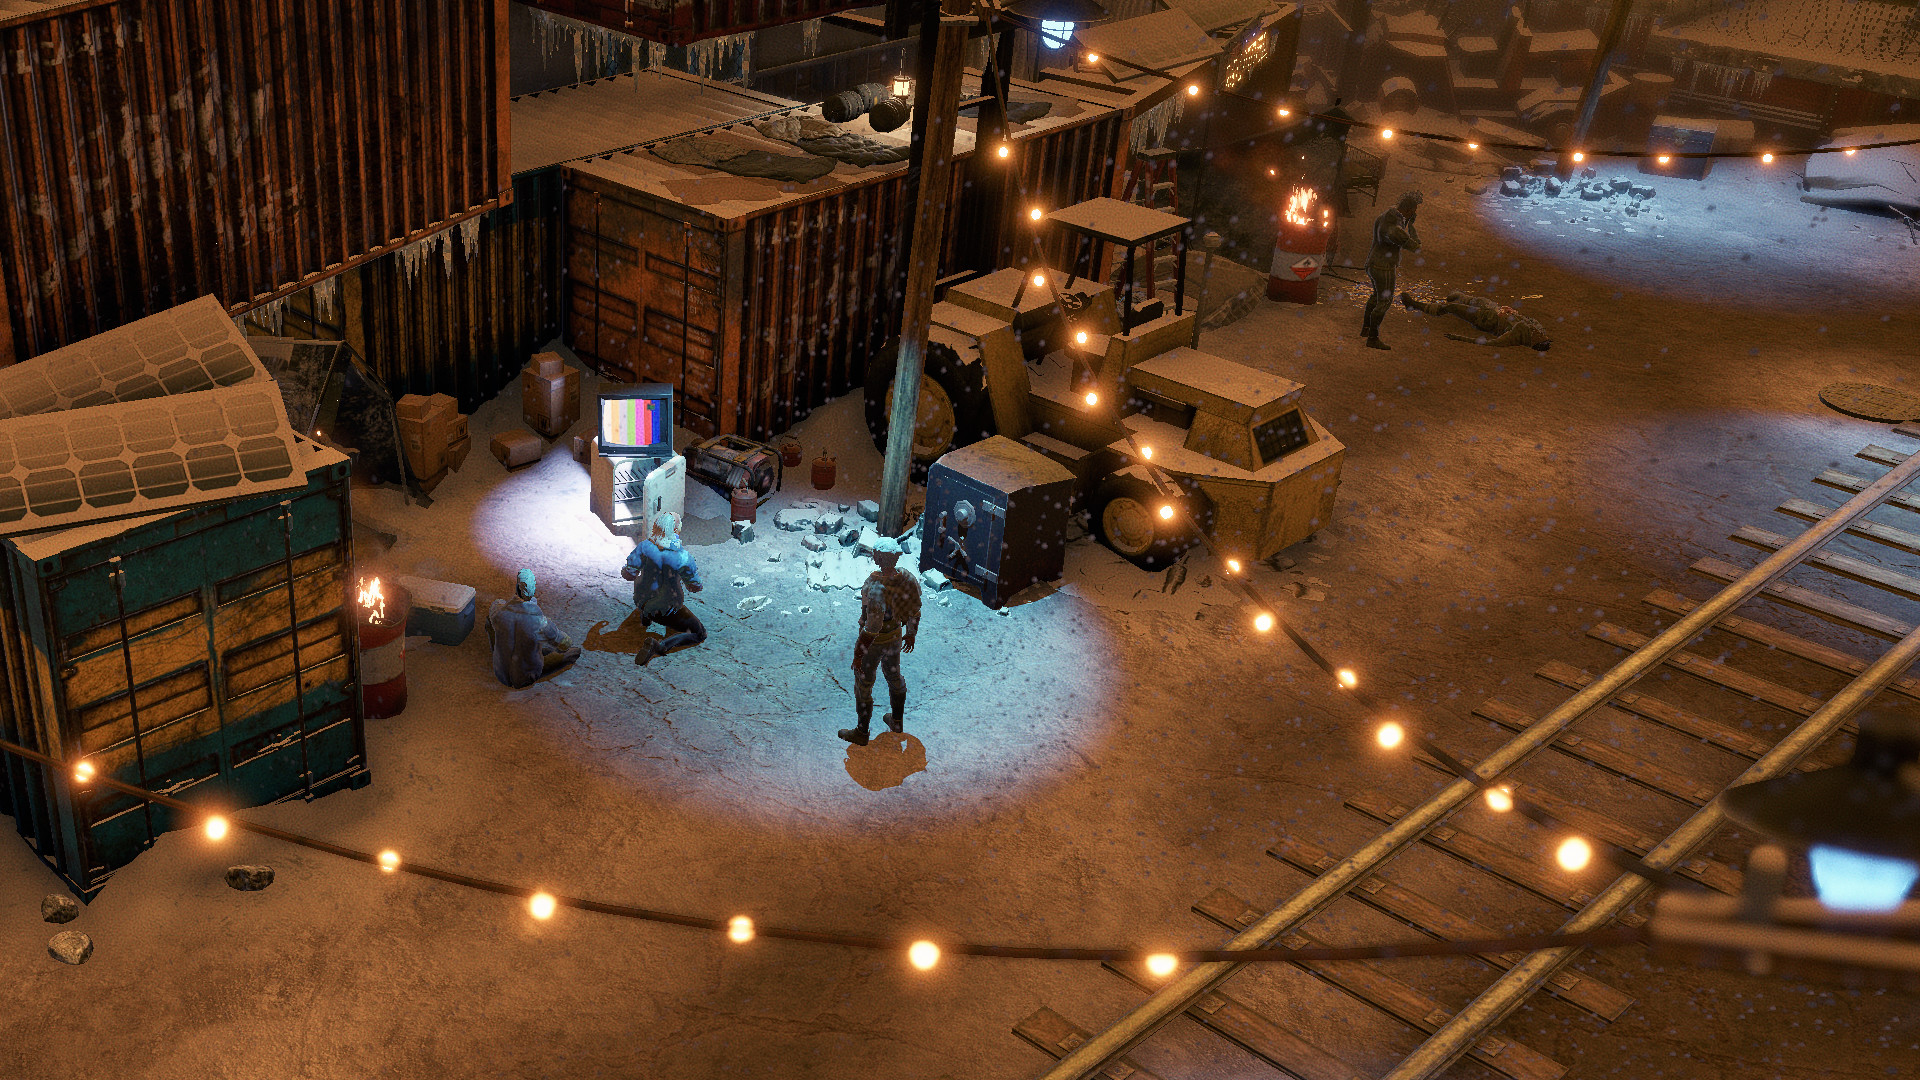 Wasteland 3 - The Battle Of Steeltown DLC EU V2 Steam Altergift